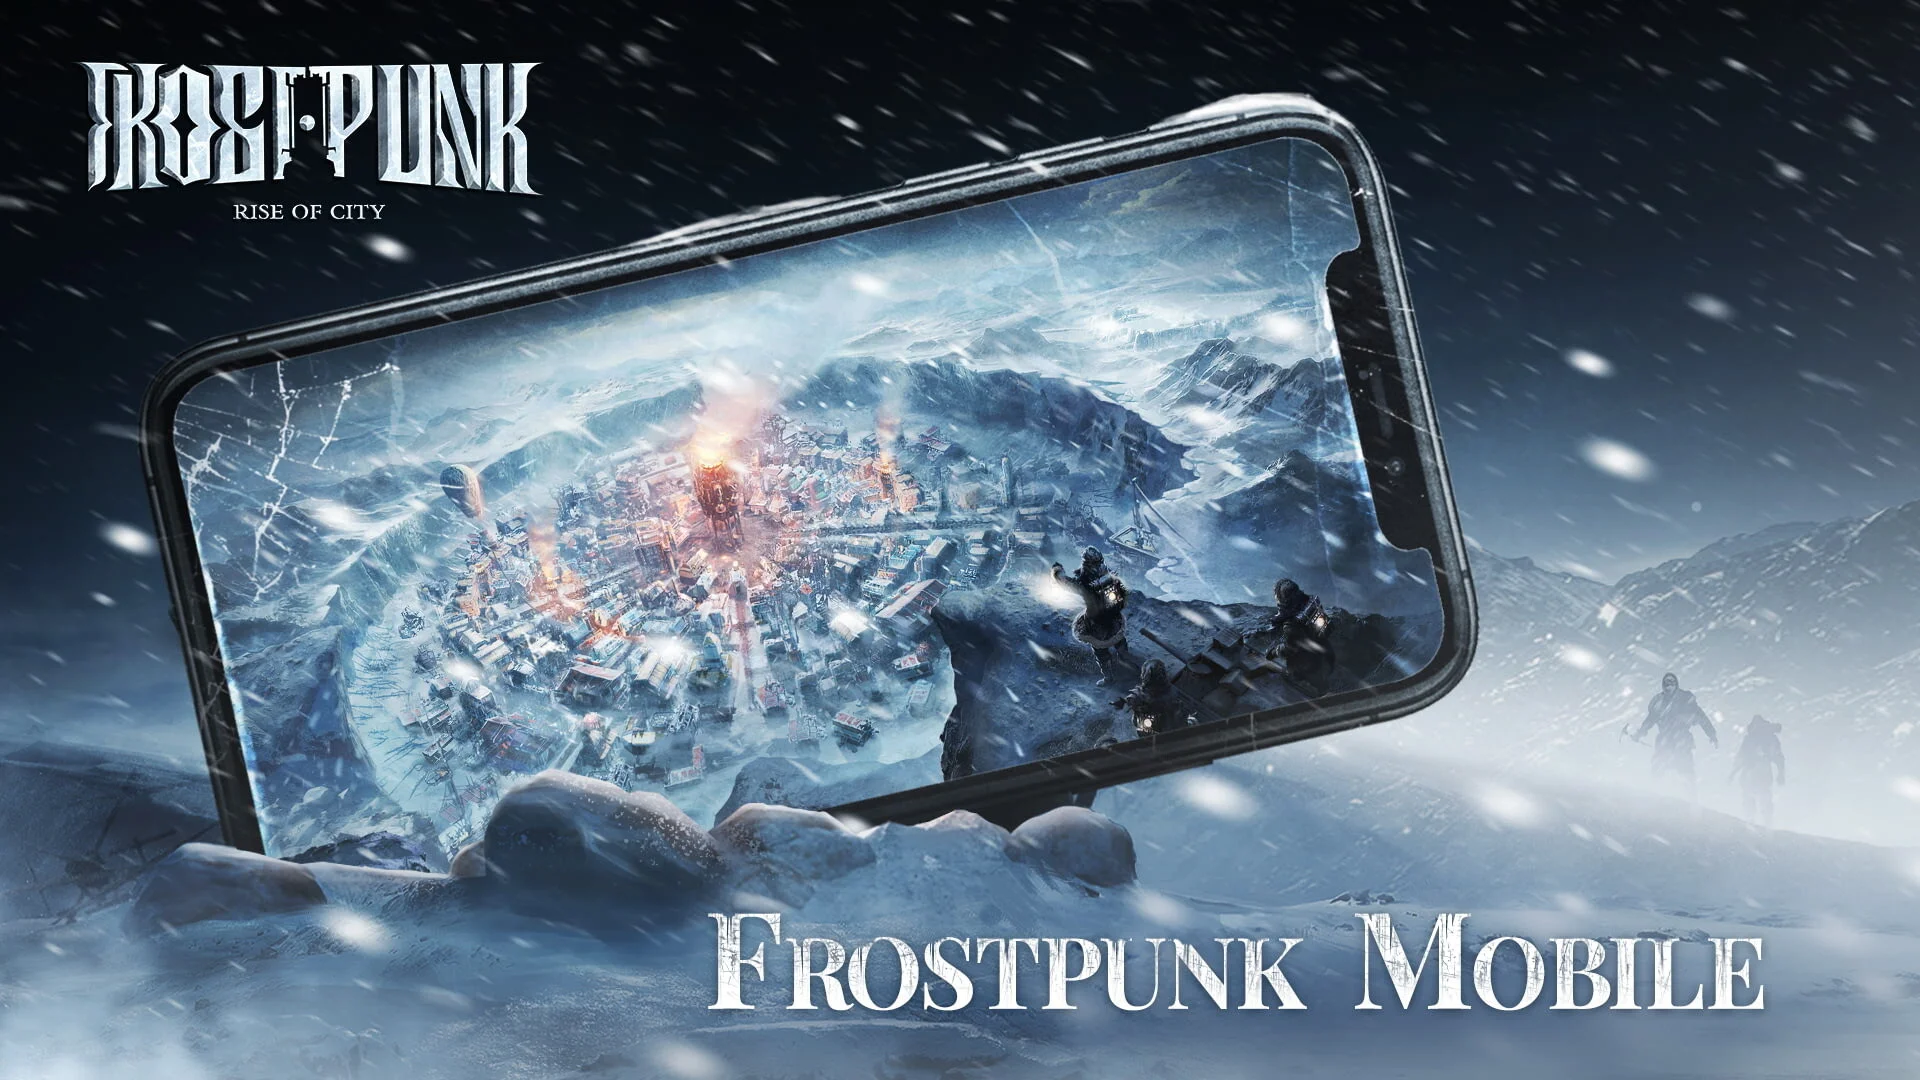 Мобильная версия Frostpunk выйдет на iOS и Android до конца 2021 года